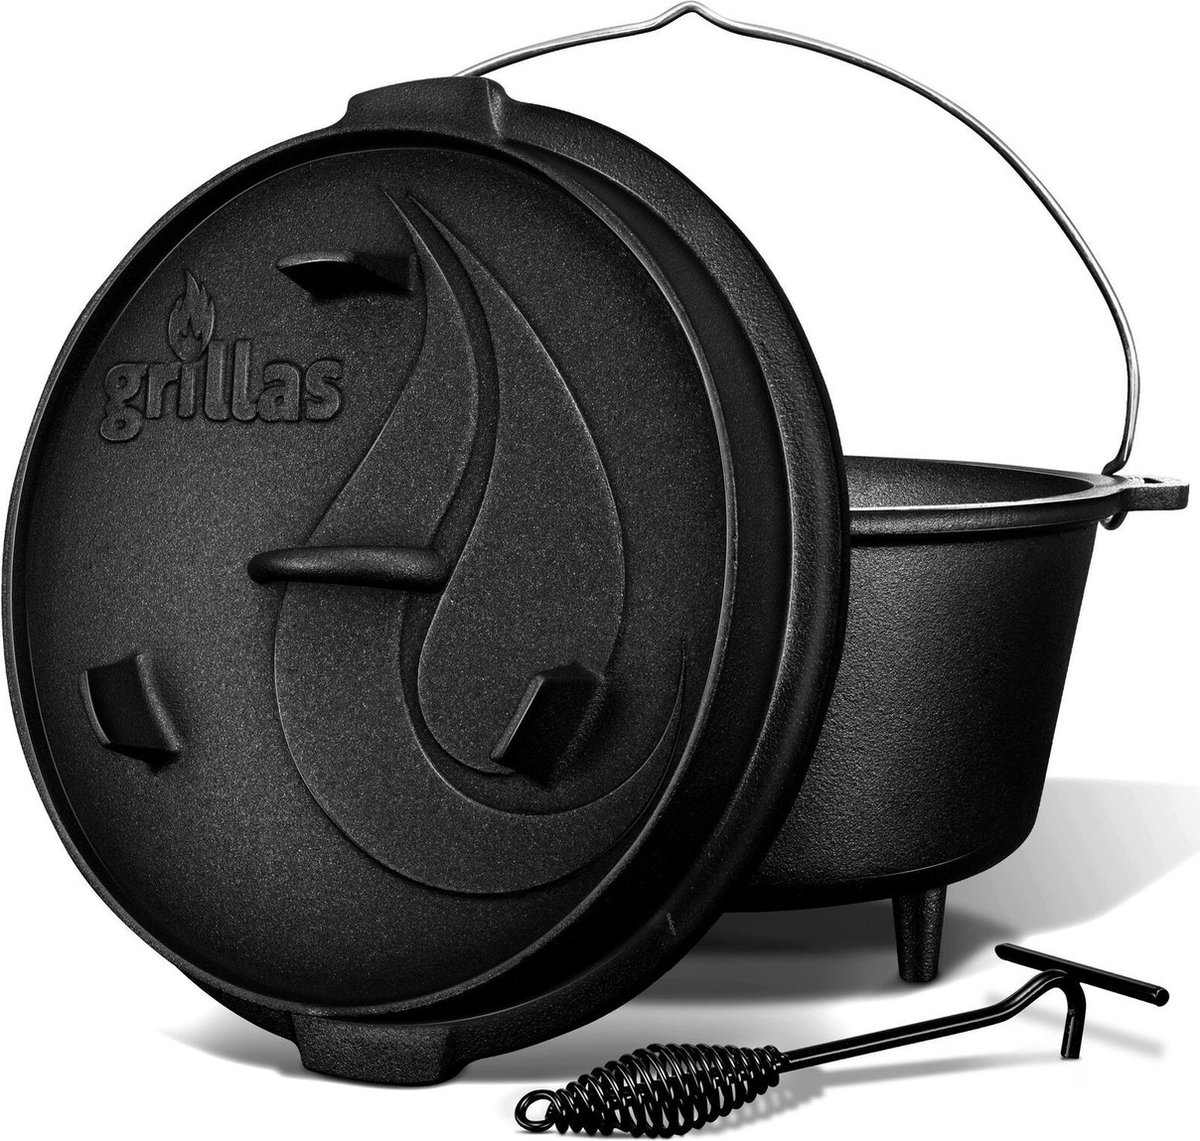 Grillas- Dutch Oven, 4.2L, BBQ pan, gietijzer, met pootjes